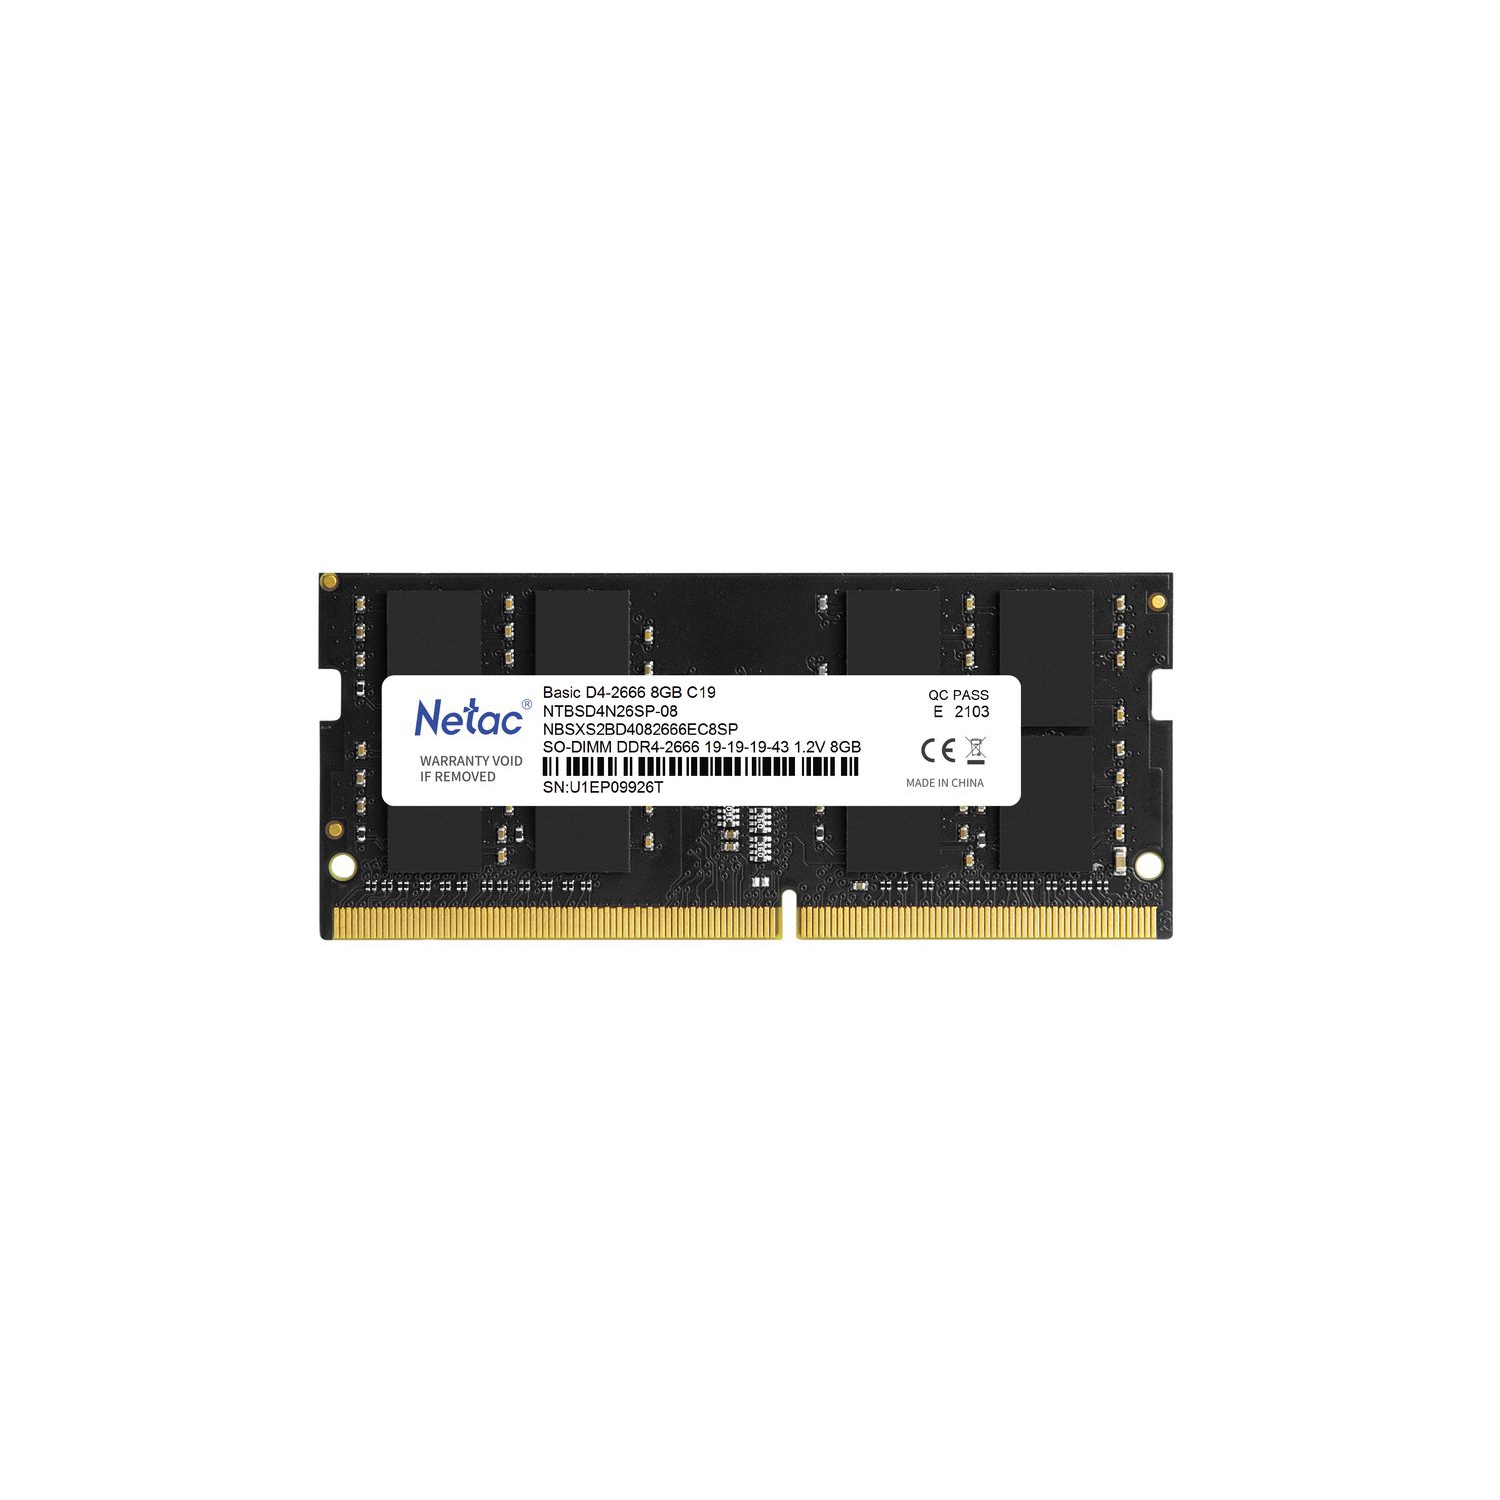 New Netac 8GB DDR4 Ram 3200MHz Laptop Memory Ram PC4-3200 1.2V CL22 260-Pin SO-DIMM